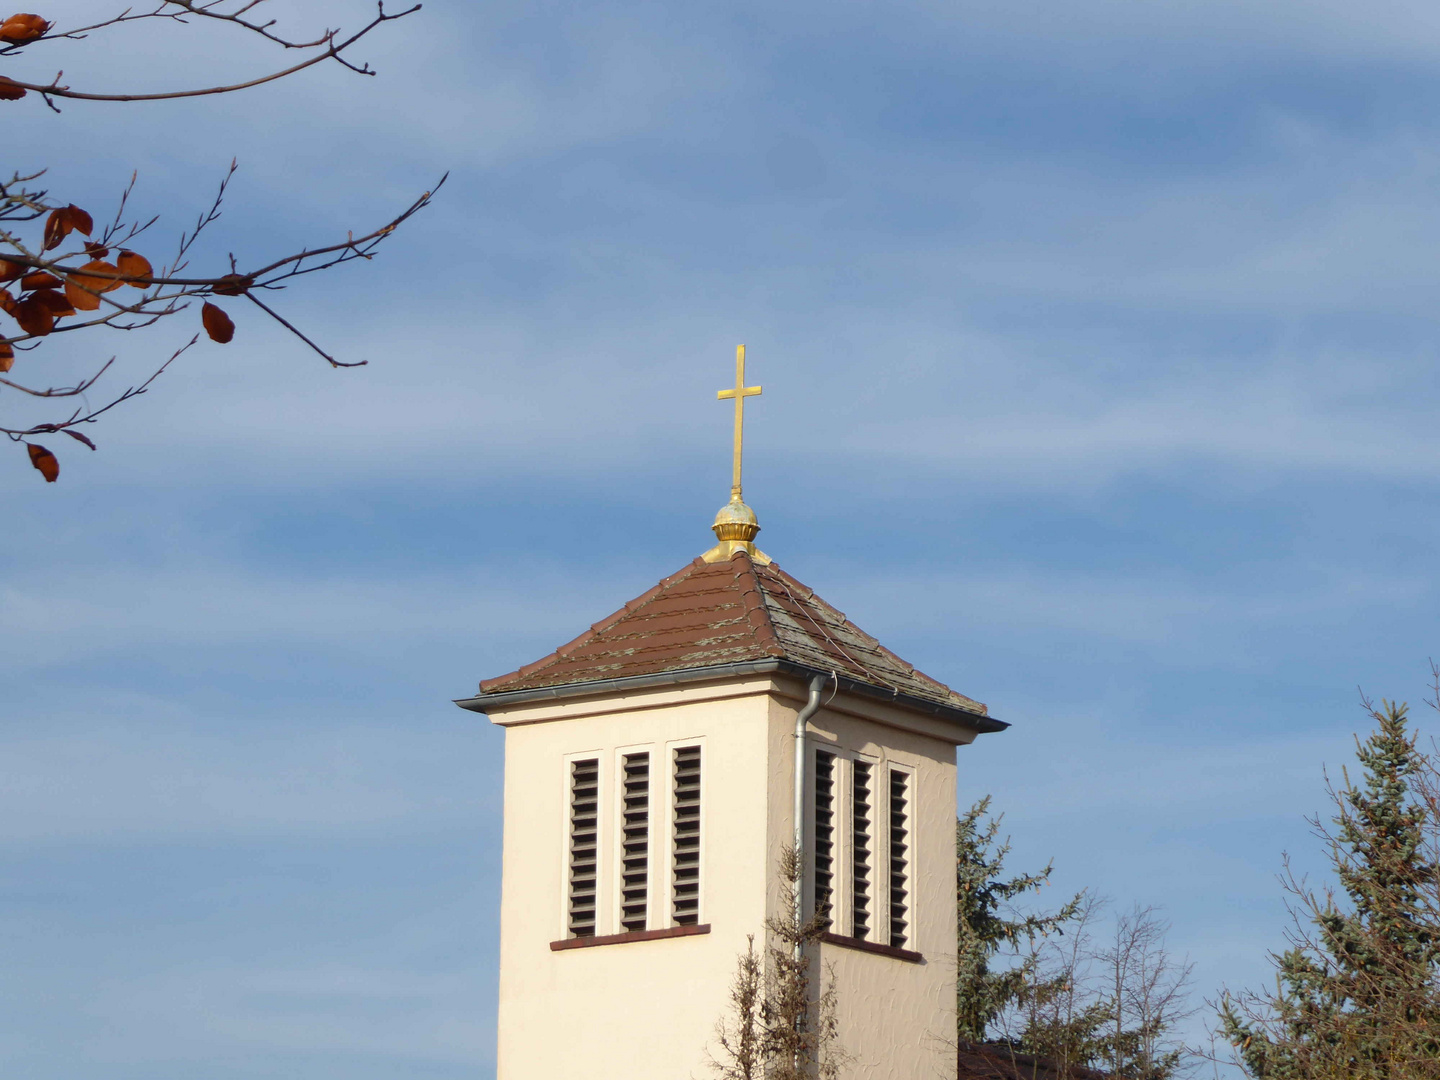 Kirchturm der katholischen Kirche in Bad Belzig